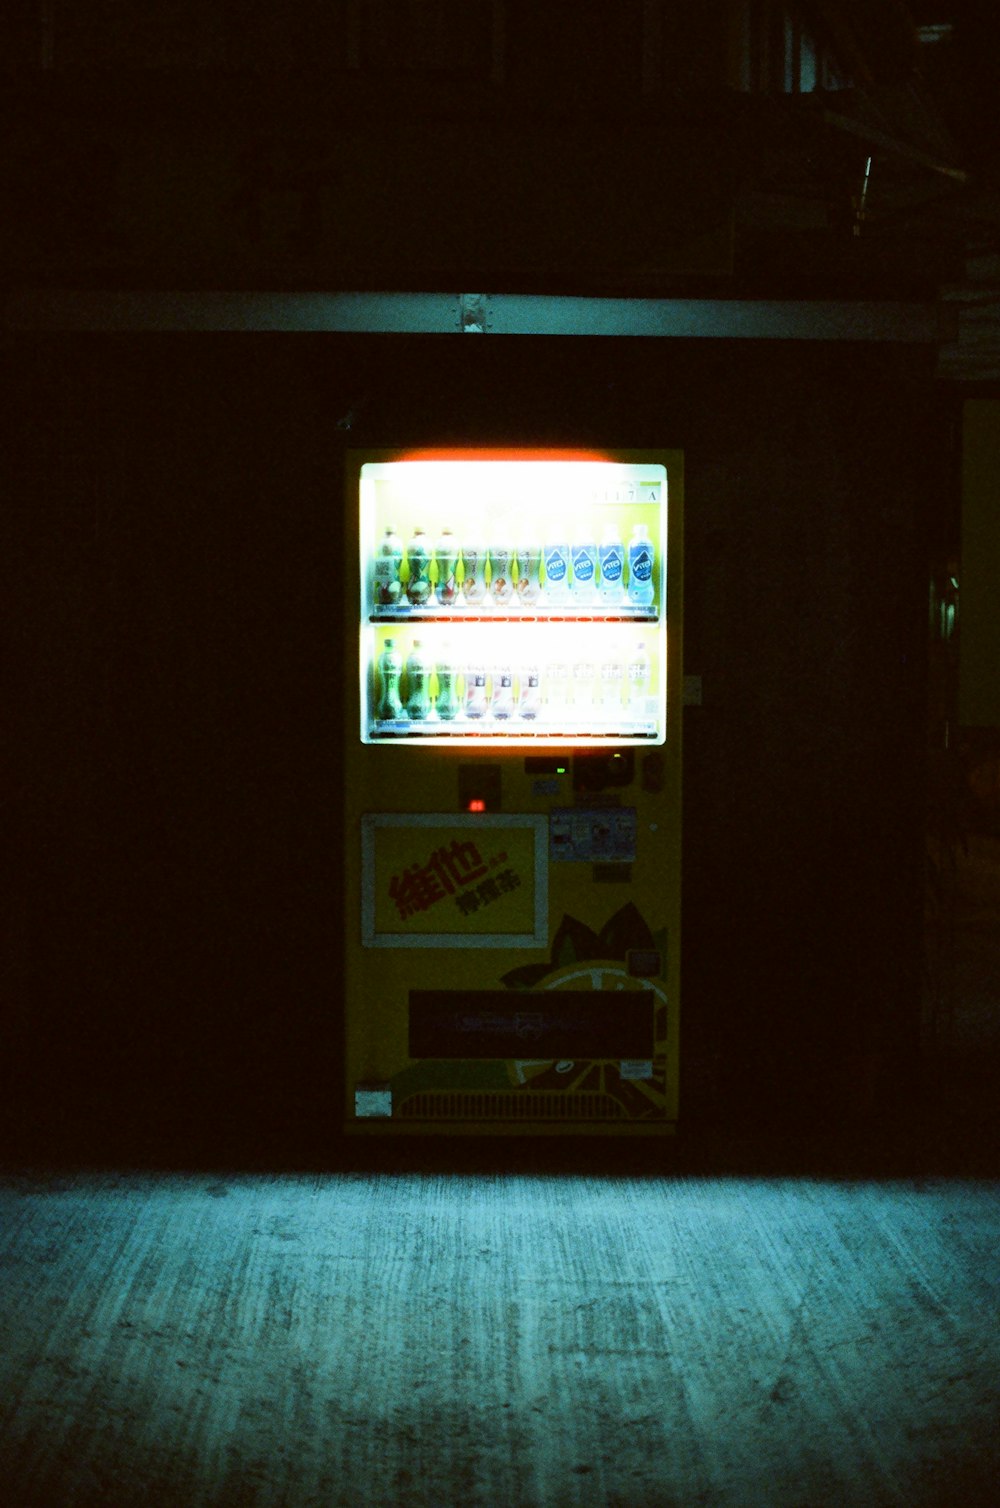 a vending machine lit up in the dark